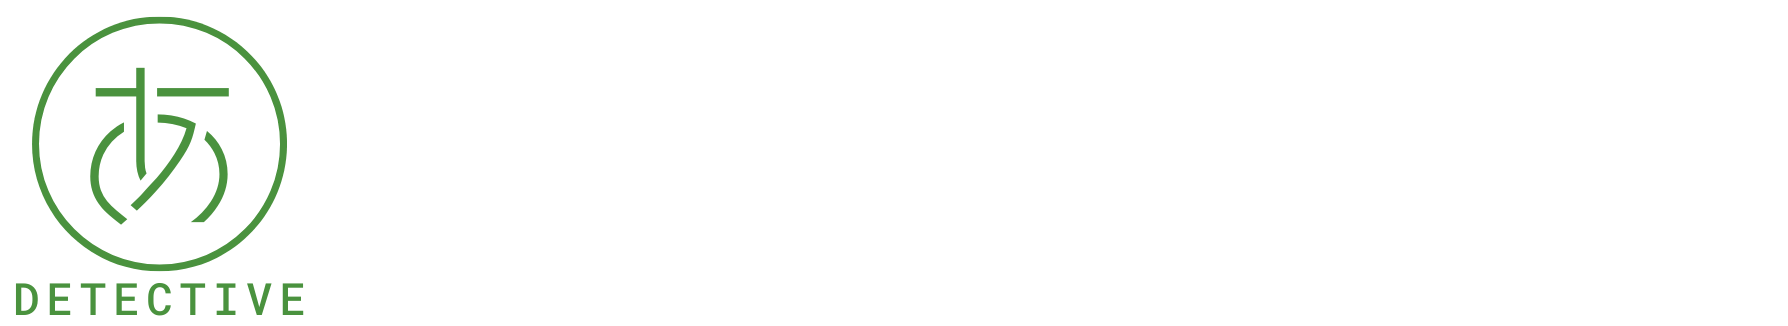 神戸三宮の探偵/興信所【不倫/浮気調査・人探しに強い】アーカス兵庫